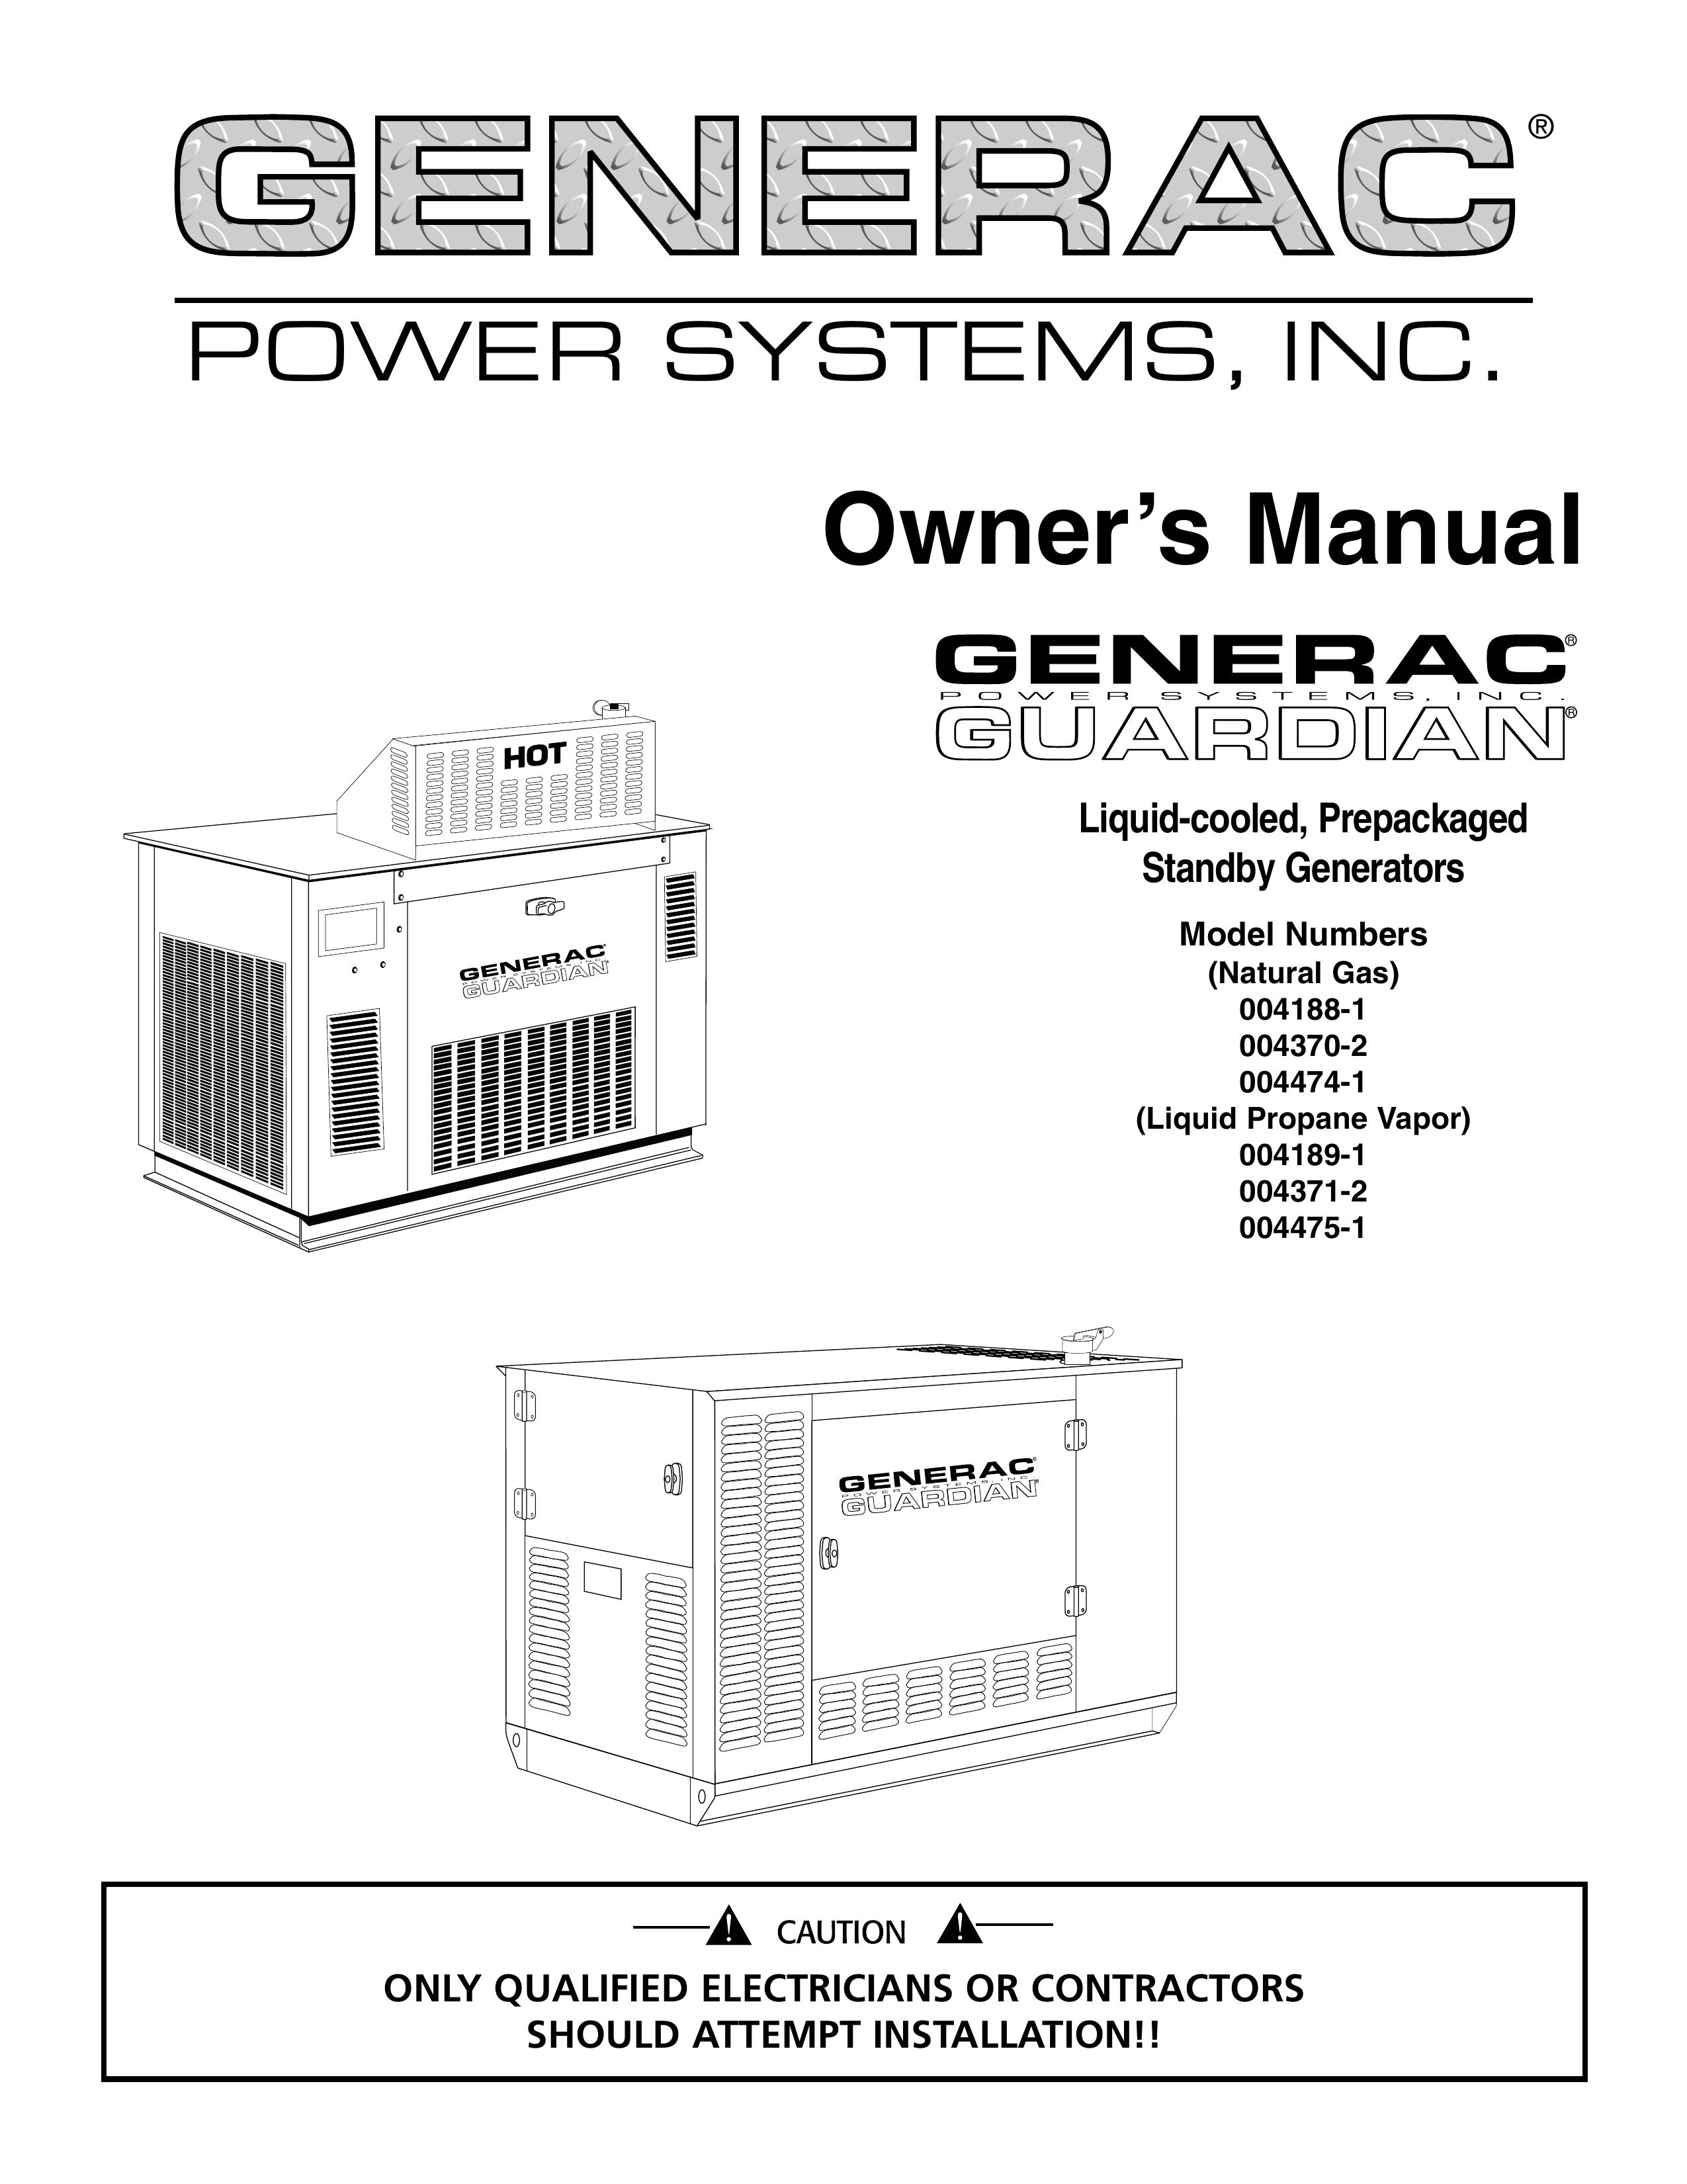 Generac 004371-2 Portable Generator User Manual